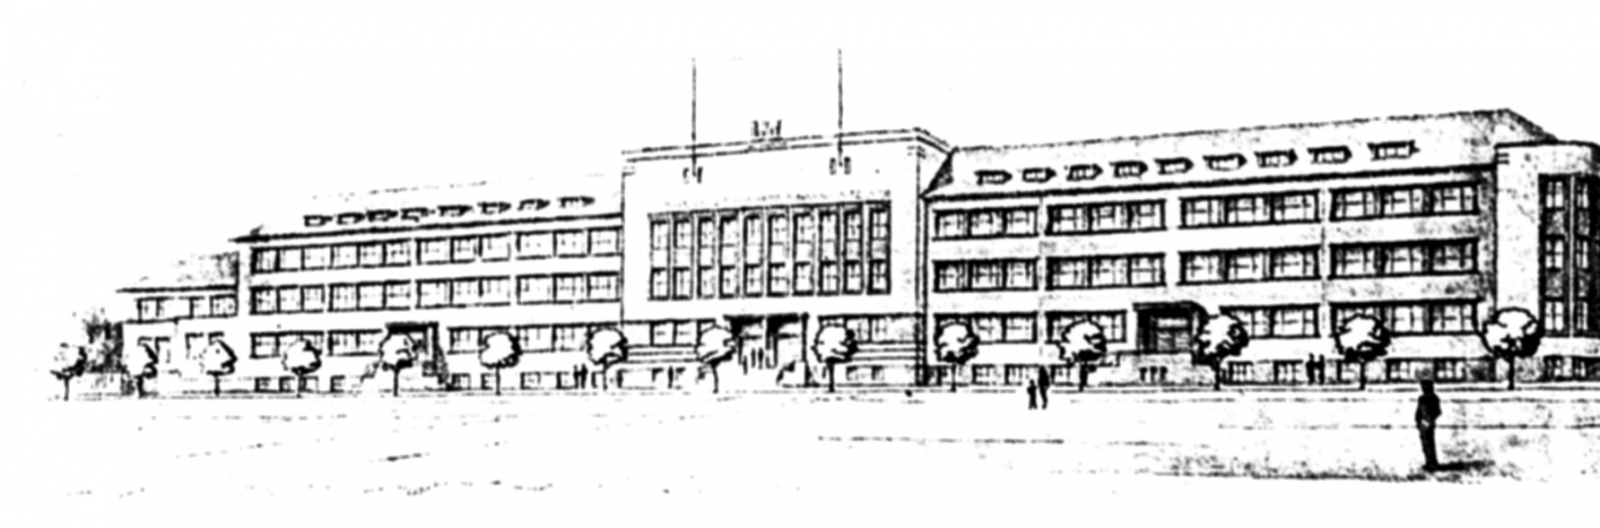 3 il. Pastato, kuriame turėjo veikti Prekybos institutas, projekto vaizdas (Prekybos institutas Klaipėdoje. Klaipėda, 1934)